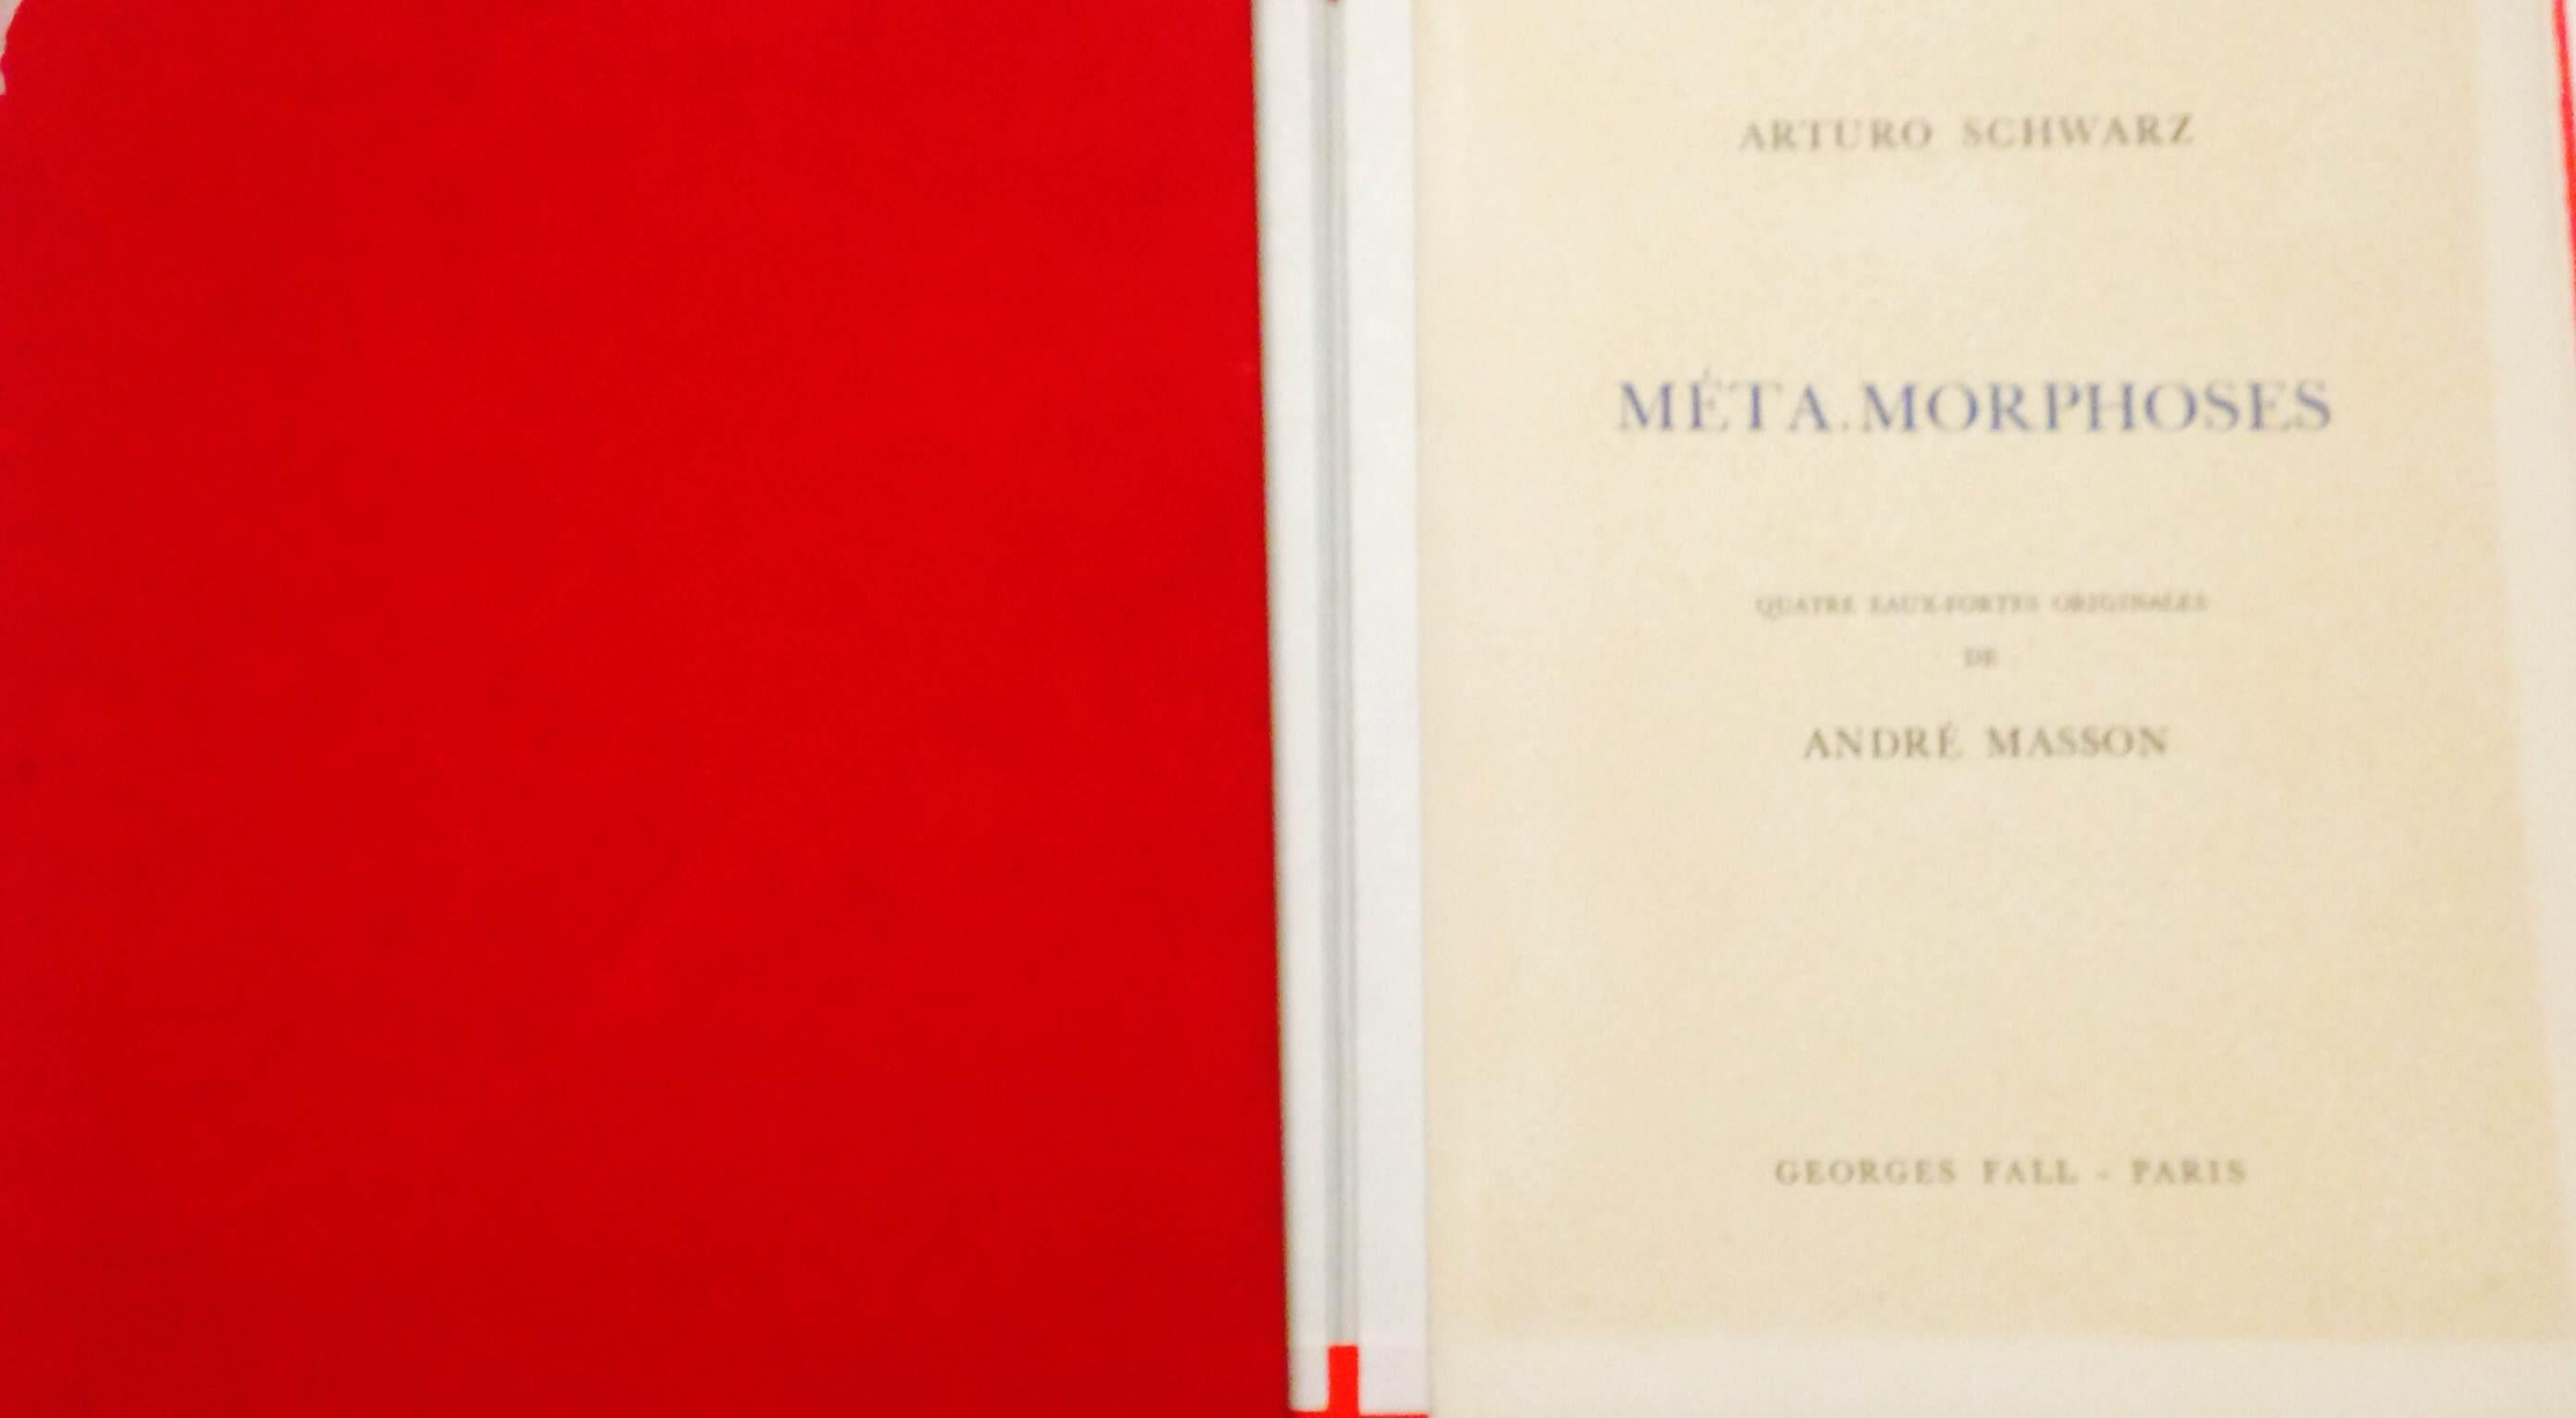 MetaMorphoses – Illustriertes Buch von Andr Masson, Herausgeber A. Schwarz – 1975 – Art von André Masson